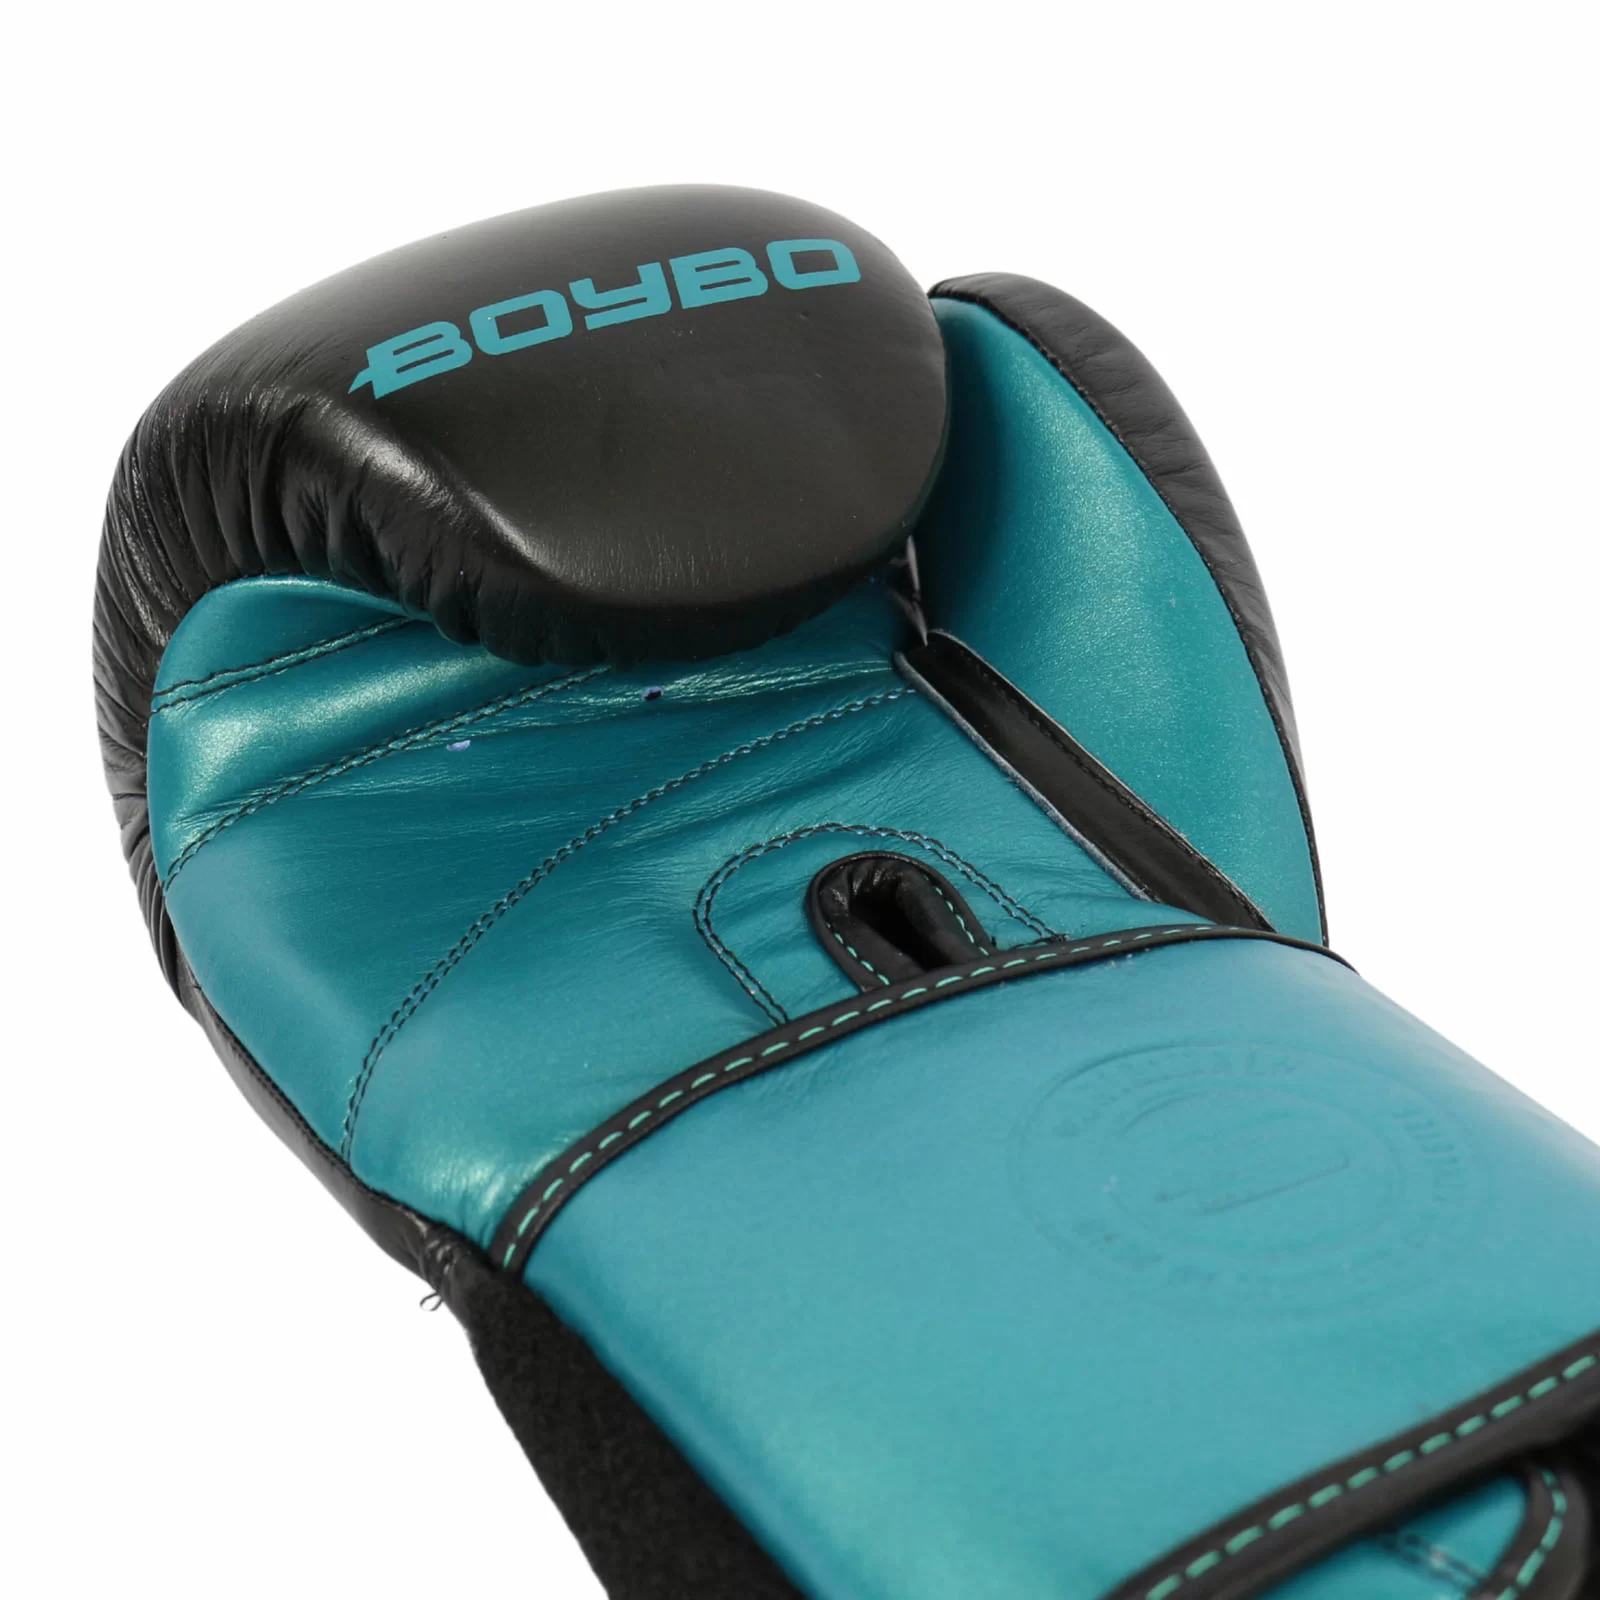 Реальное фото Перчатки боксерские BoyBo Exist кожа голубые BBG300 от магазина СпортЕВ